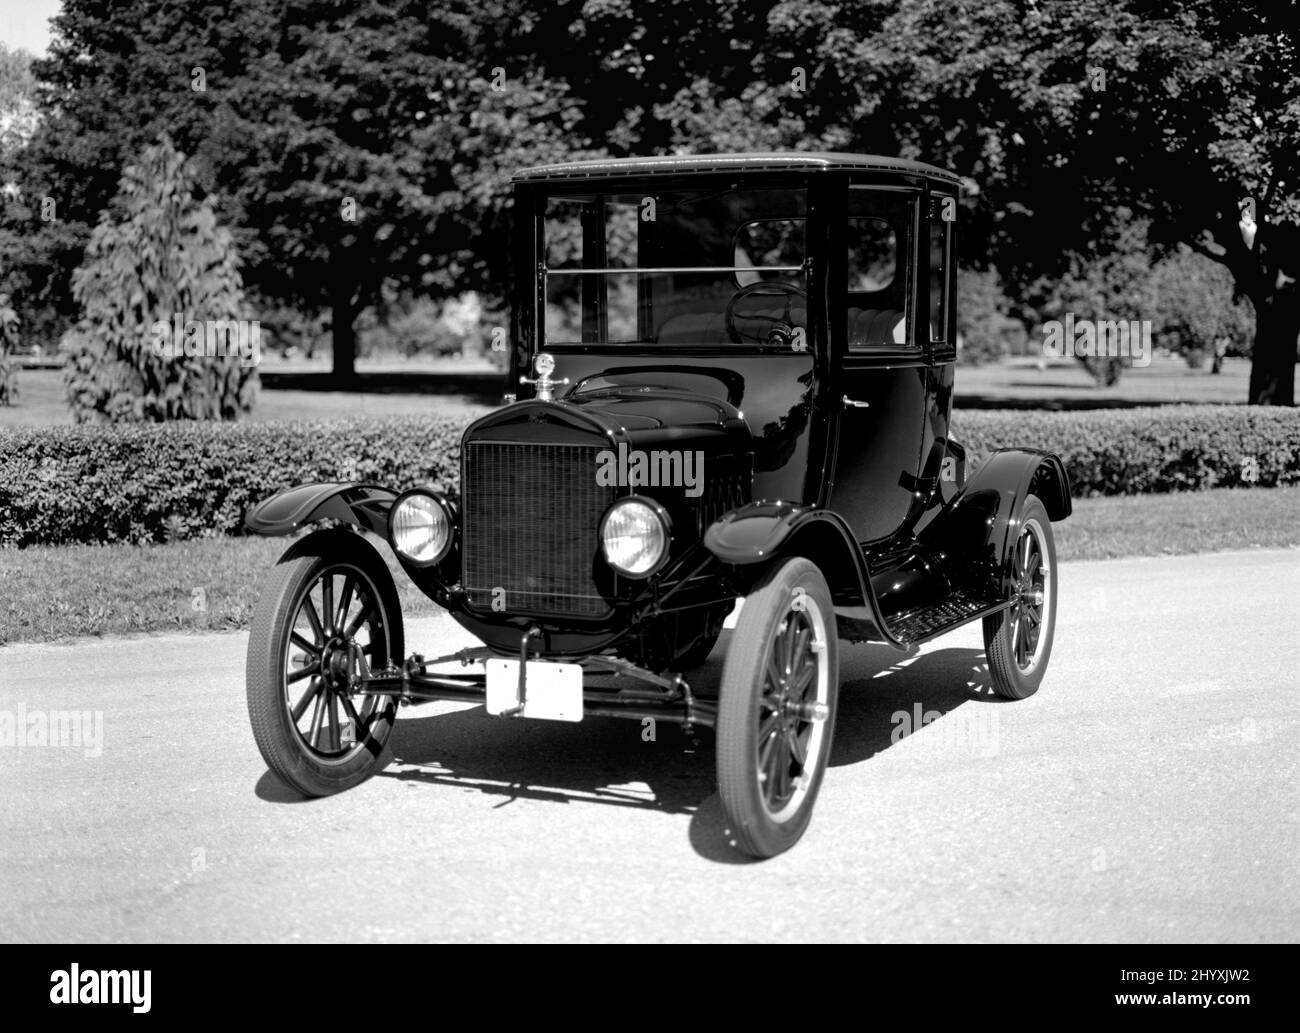 Image en noir et blanc du coupé Ford modèle T 1923 sur chaussée. Banque D'Images